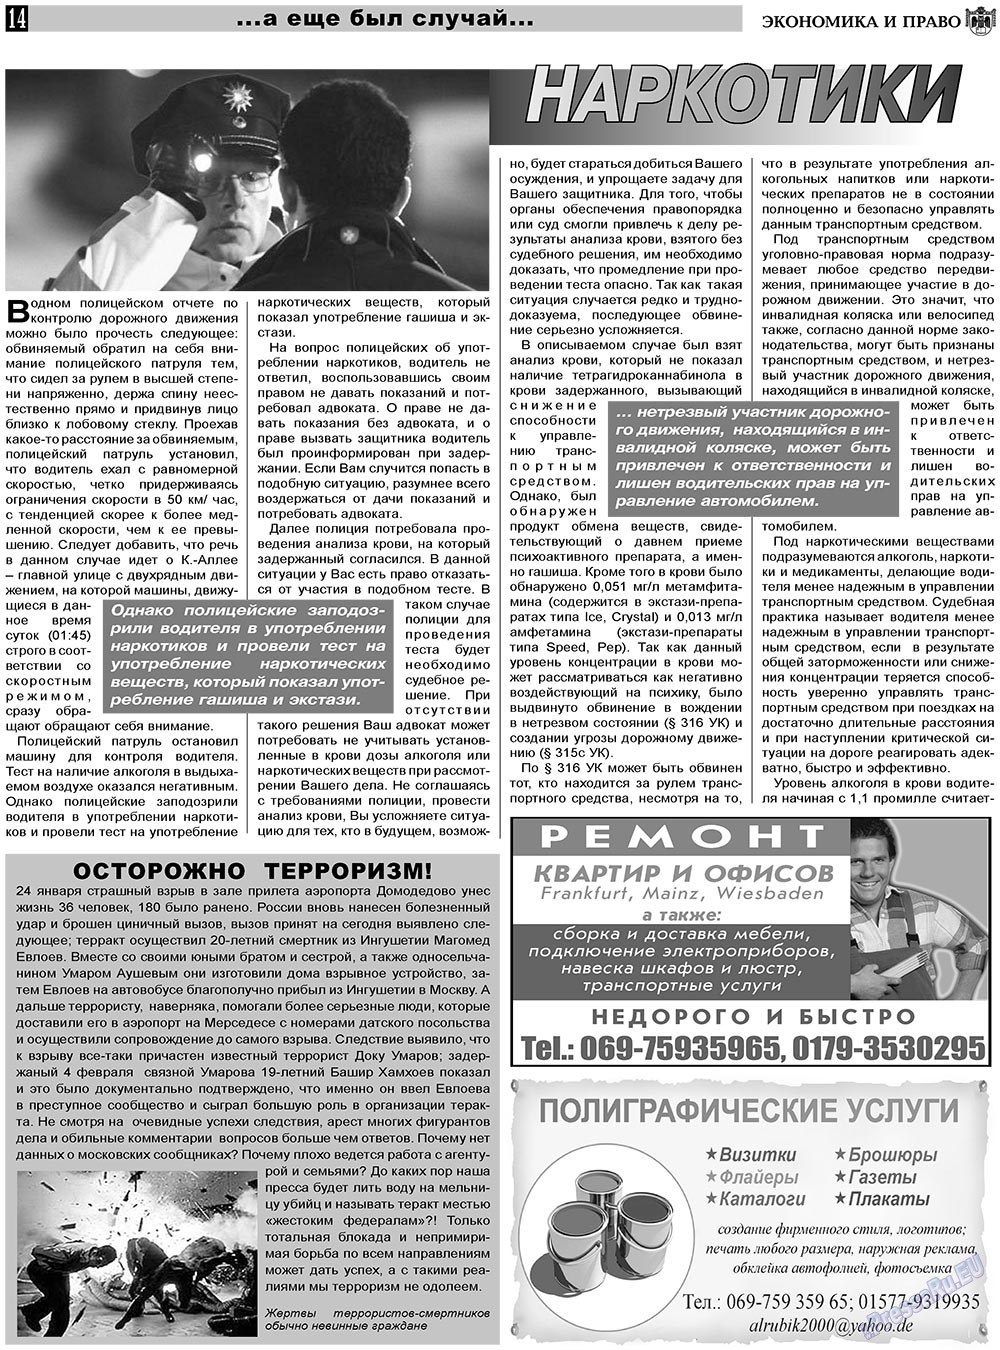 Экономика и право, газета. 2011 №3 стр.14